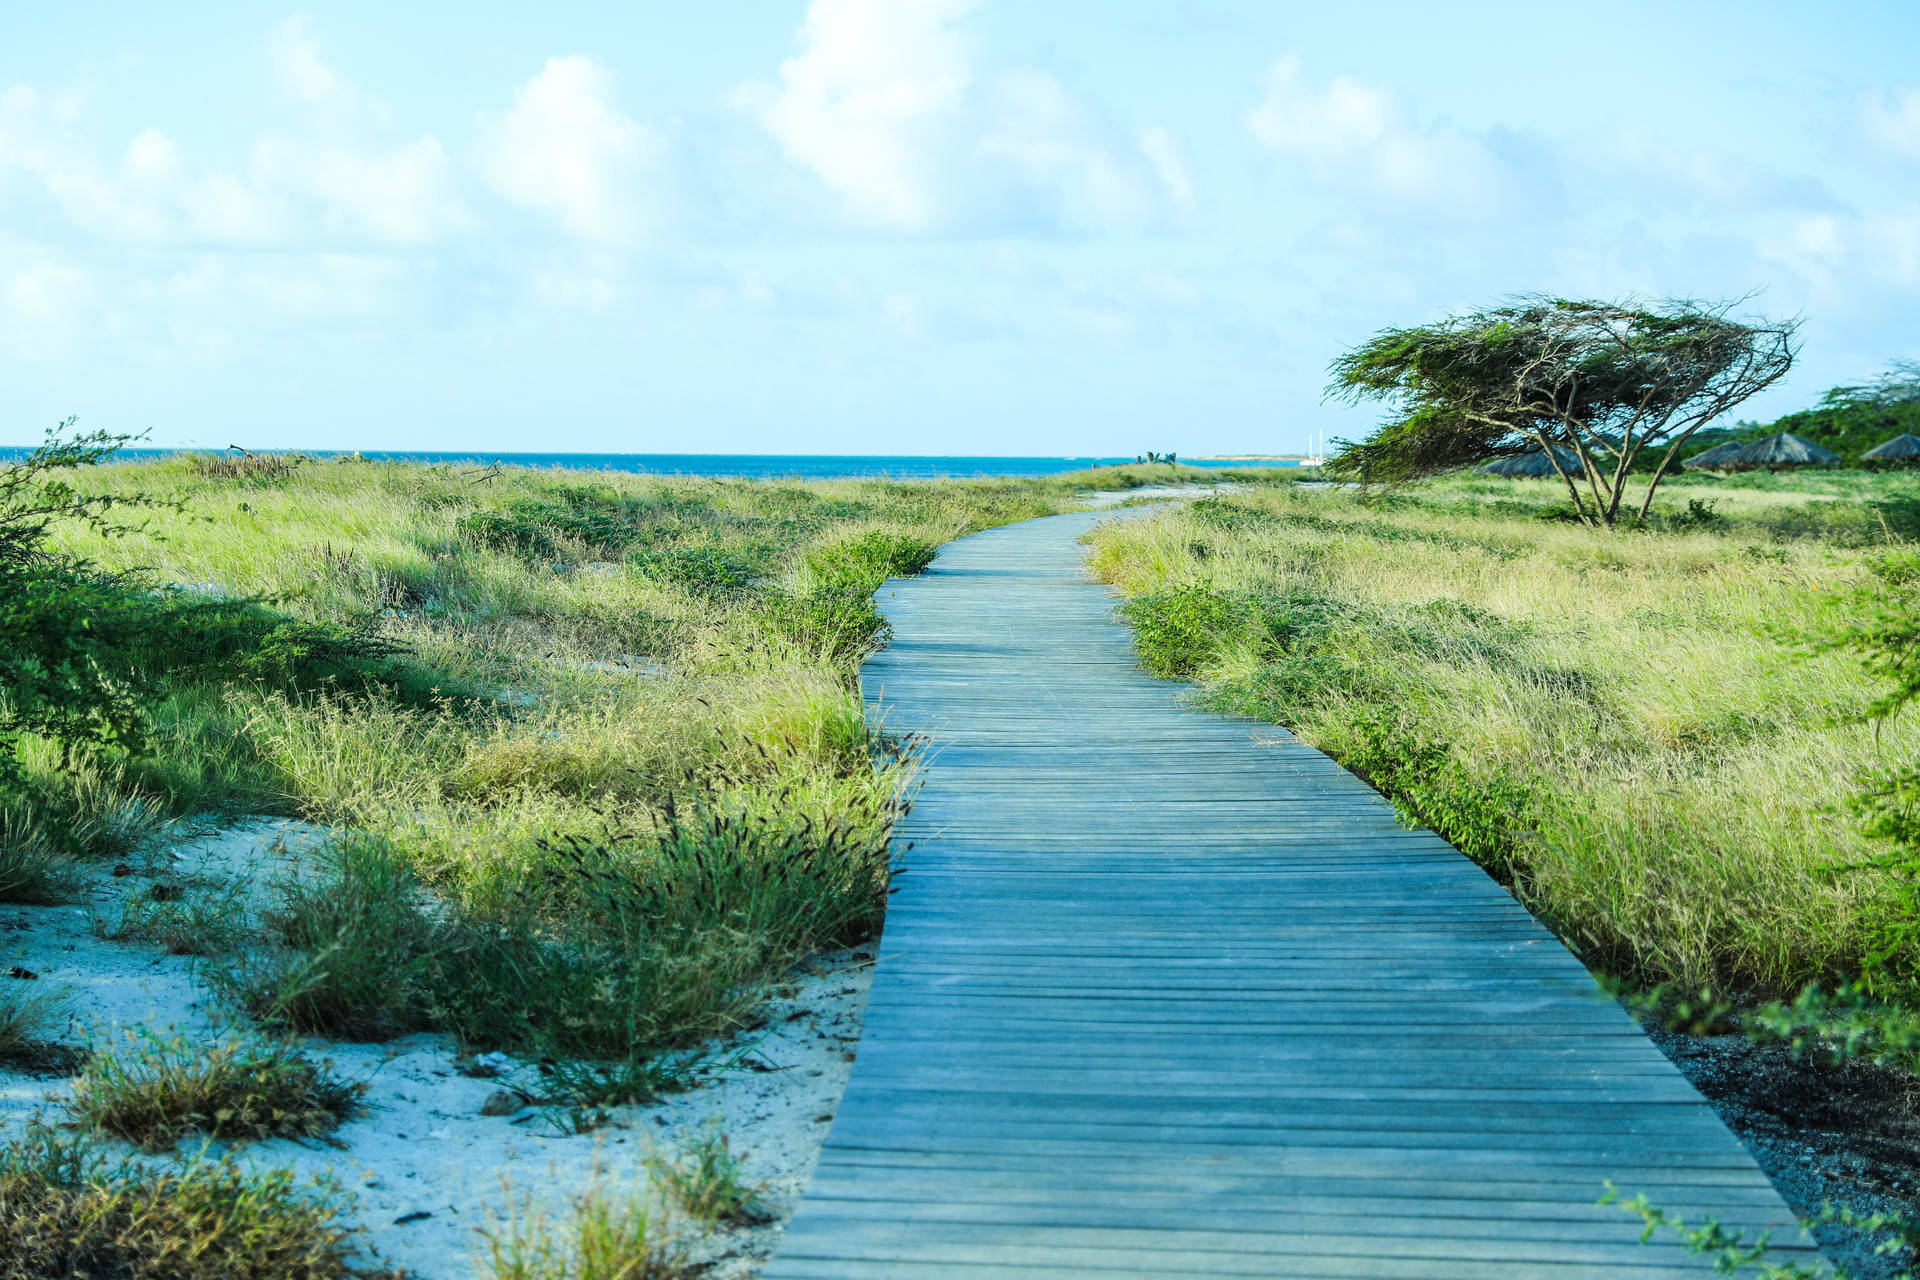 Aruba Boardwalk Landscape Background